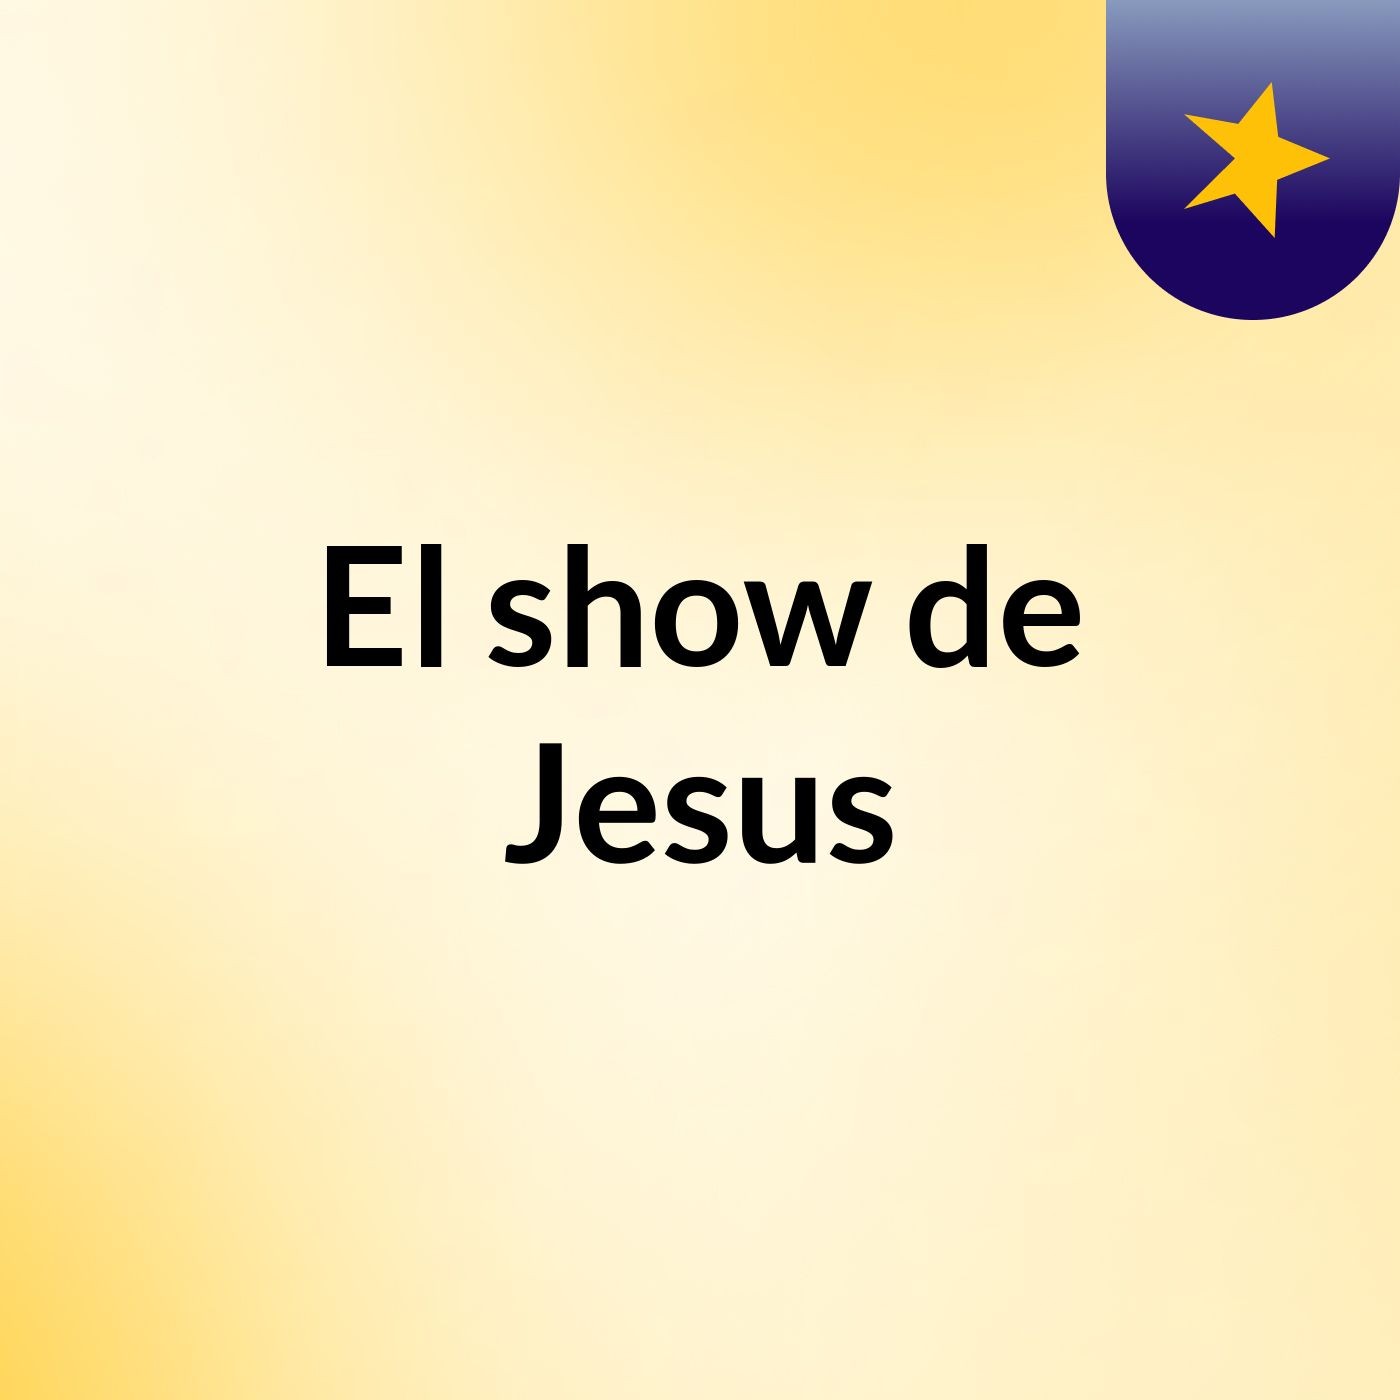 El show de Jesus